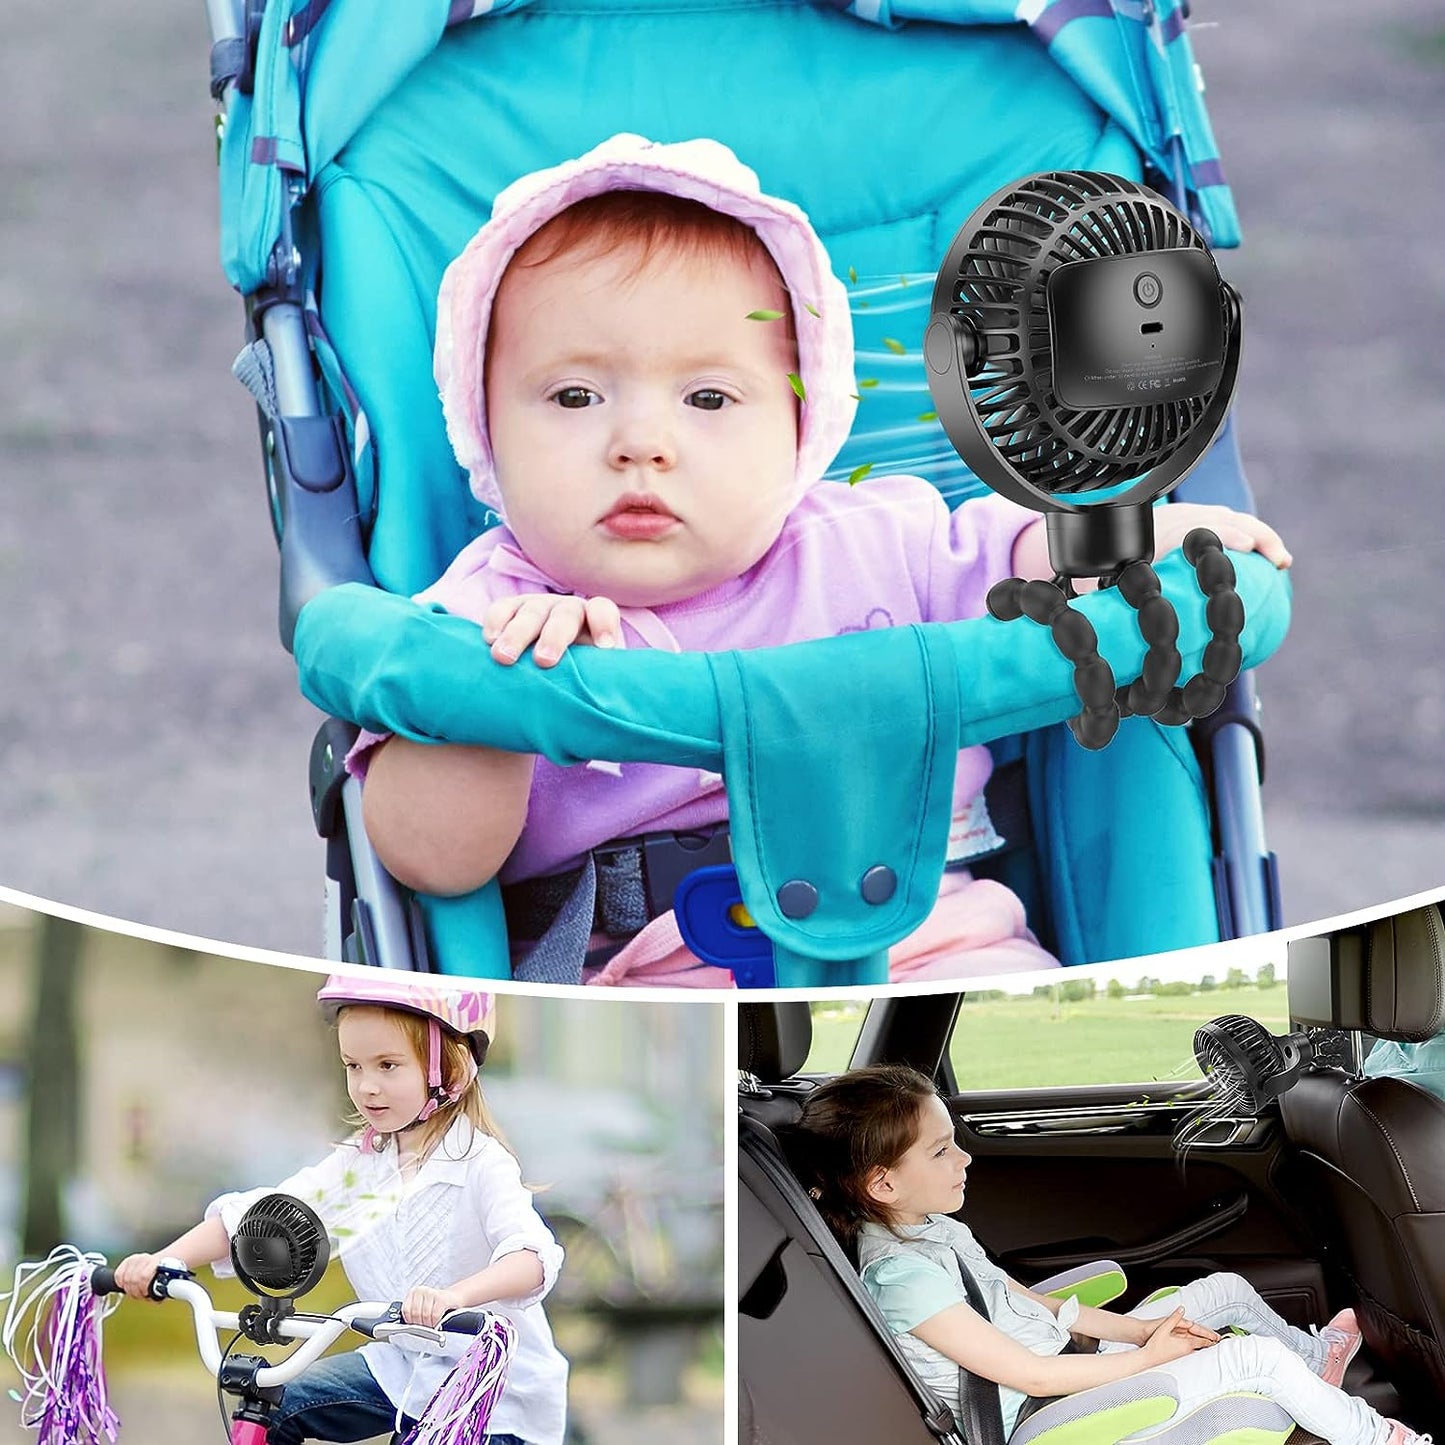 SmartDevil Ventilador portátil para cochecito de bebé, 4000 mAh, pequeño ventilador para cochecito de bebé, ventilador de asiento de coche de 4 velocidades con trípode flexible, doble giro de 360°, para bicicleta Peloton, cuna, cinta de correr (negro)